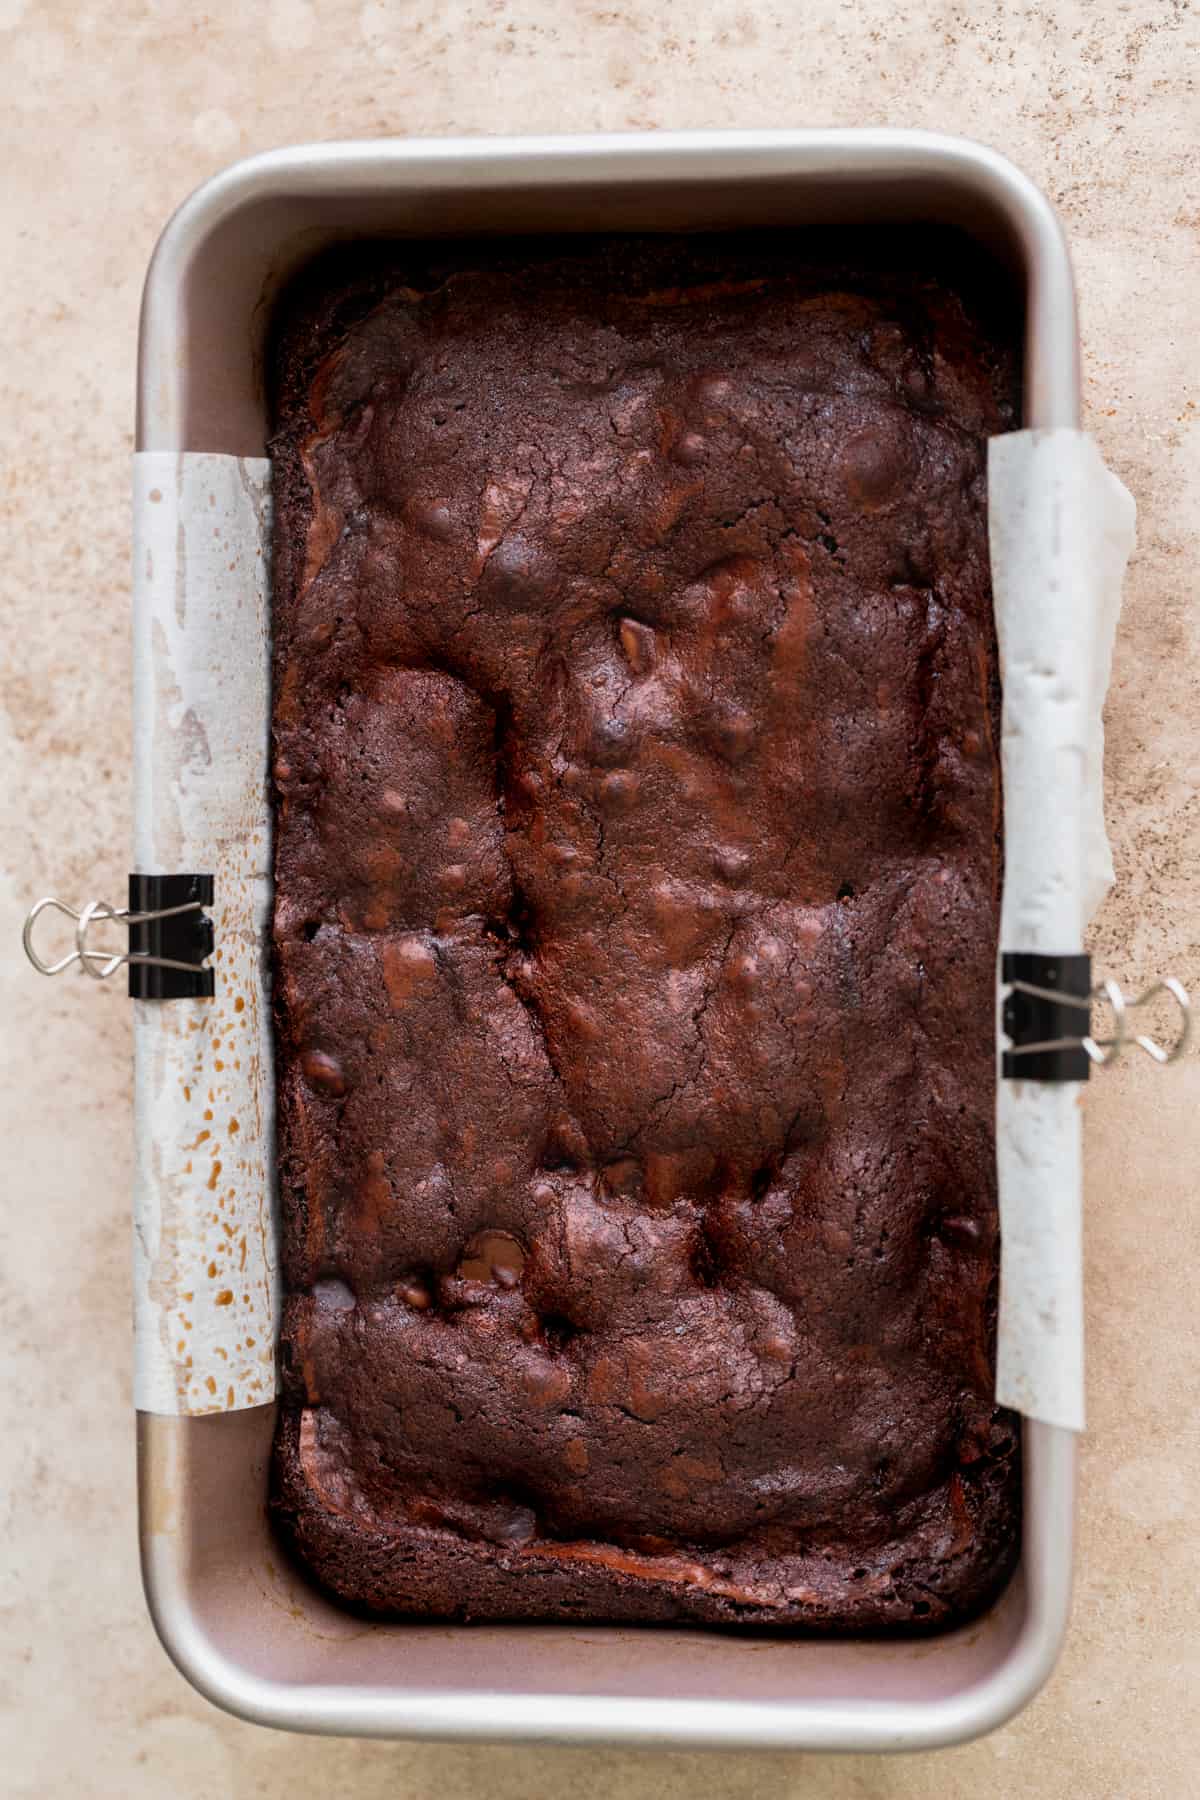 Brownie baked in a loaf pan.